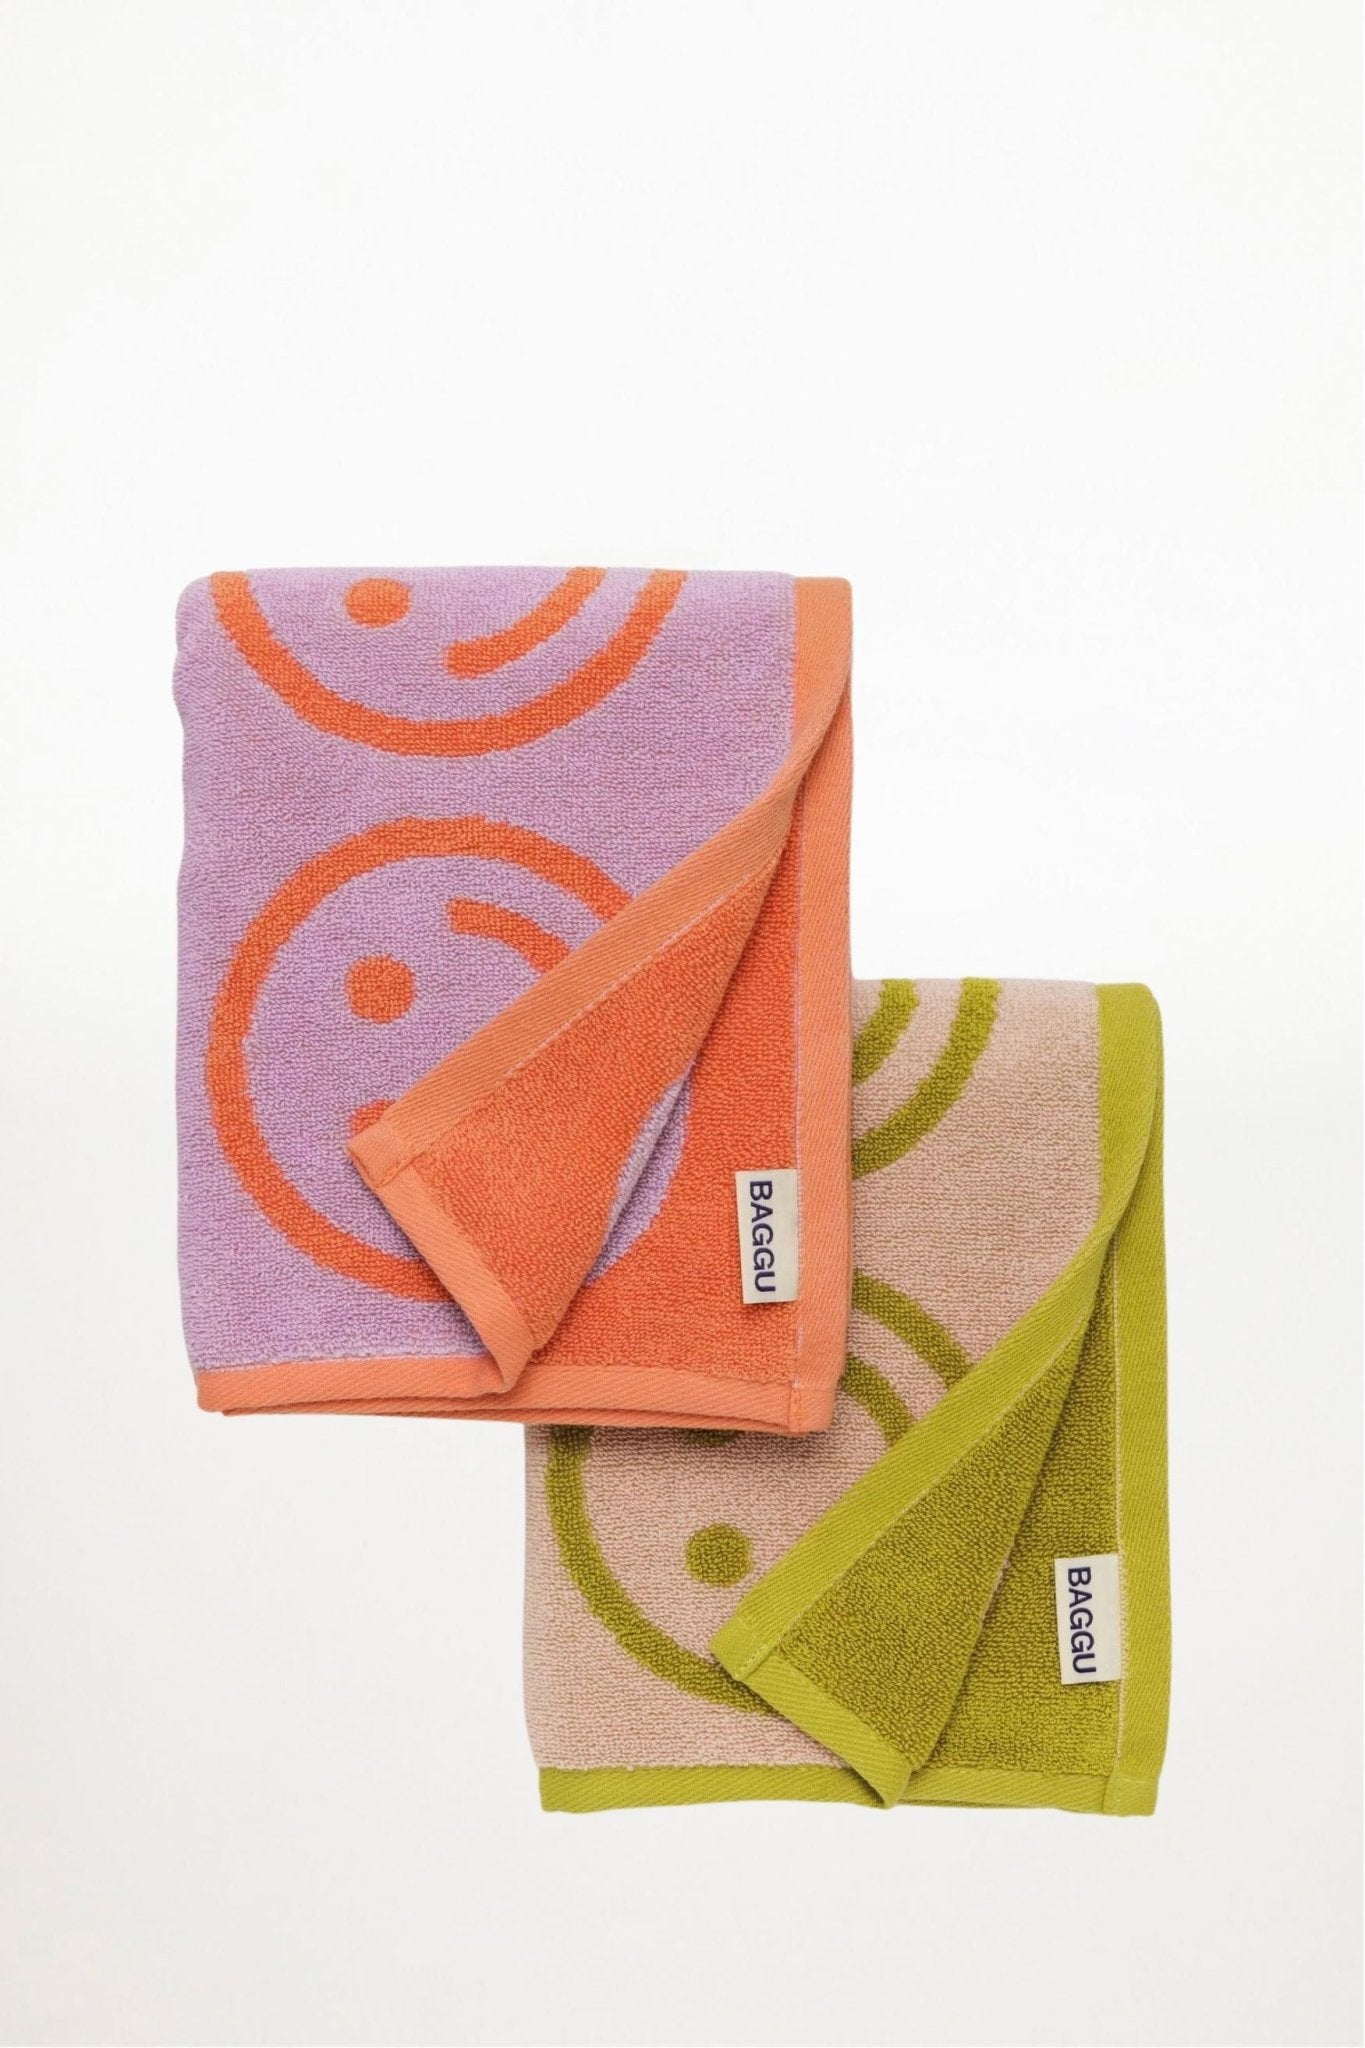 Baggu - Hand Towel - Set of 2 - Happy Lilac Ochre - Ensemble Studios